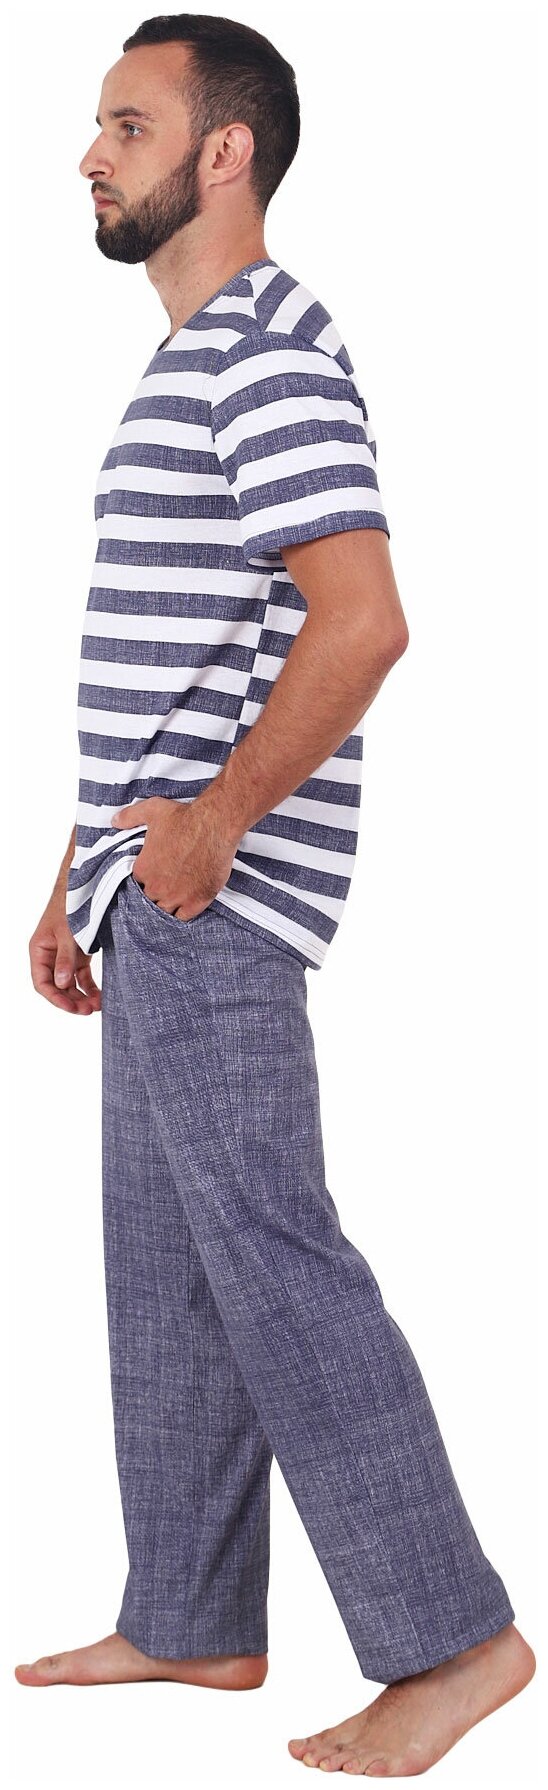 Мужская пижама Вояж Синий размер 58 Кулирка Оптима трикотаж футболка в полоску с коротким рукавом брюки с карманами - фотография № 3